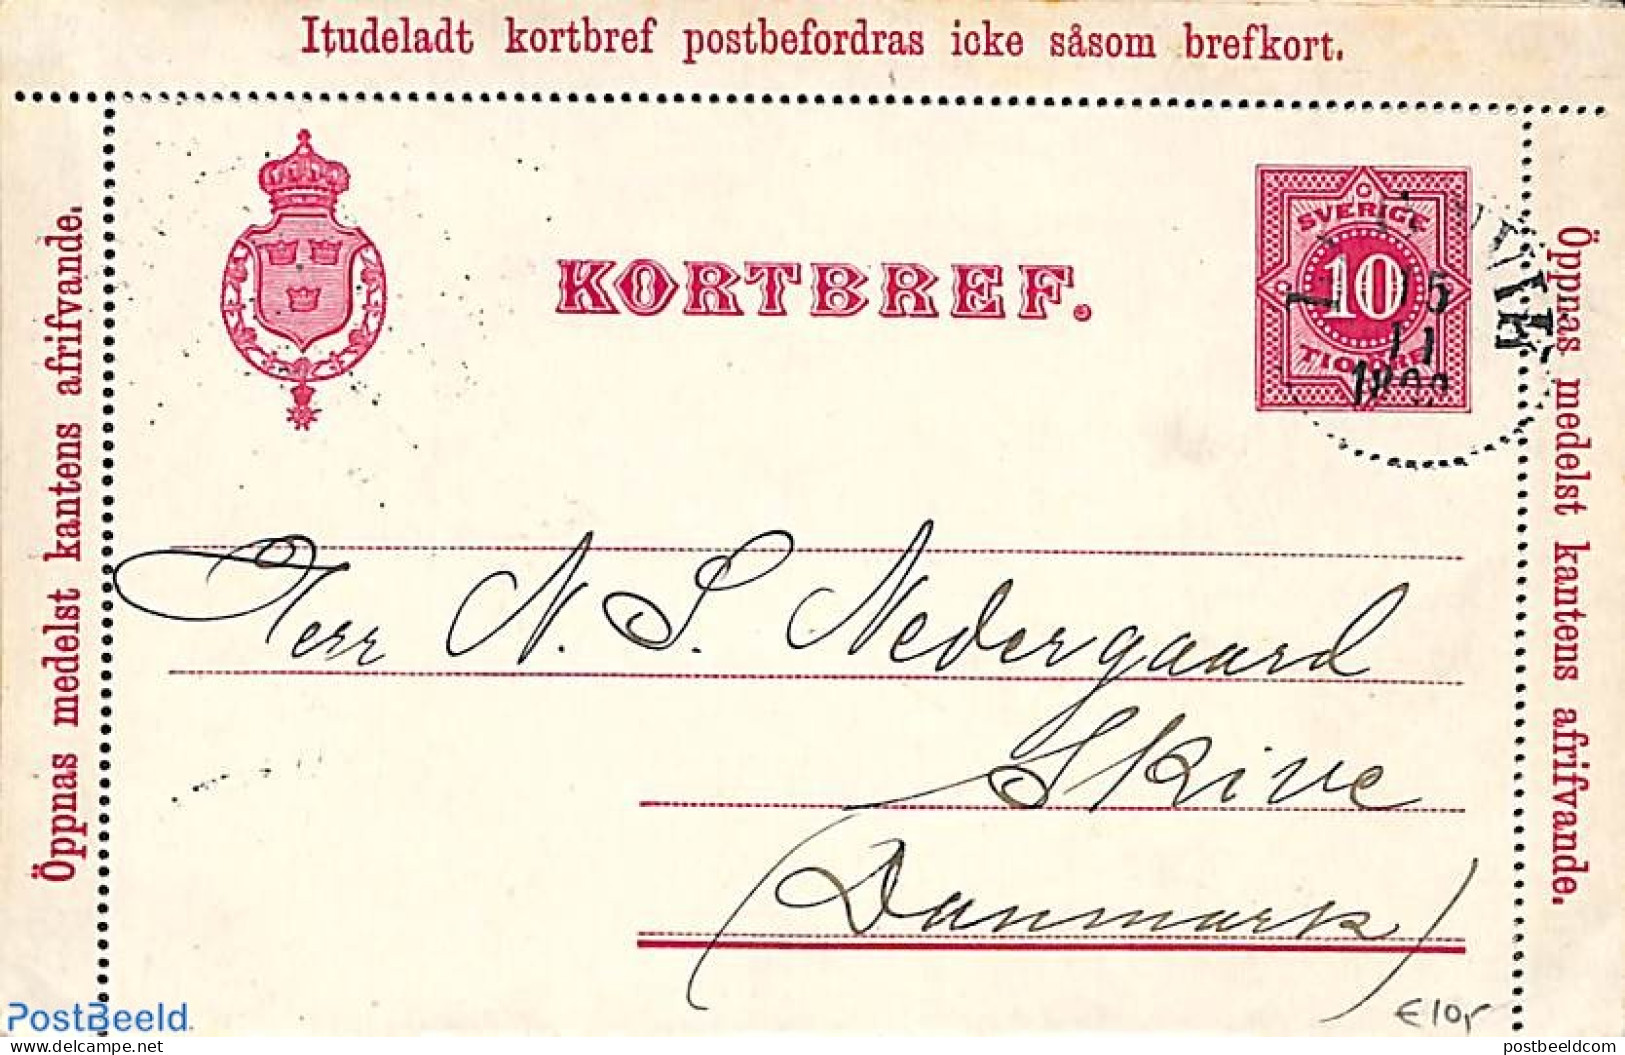 Sweden 1892 Card Letter 10ö, Used, Used Postal Stationary - Storia Postale